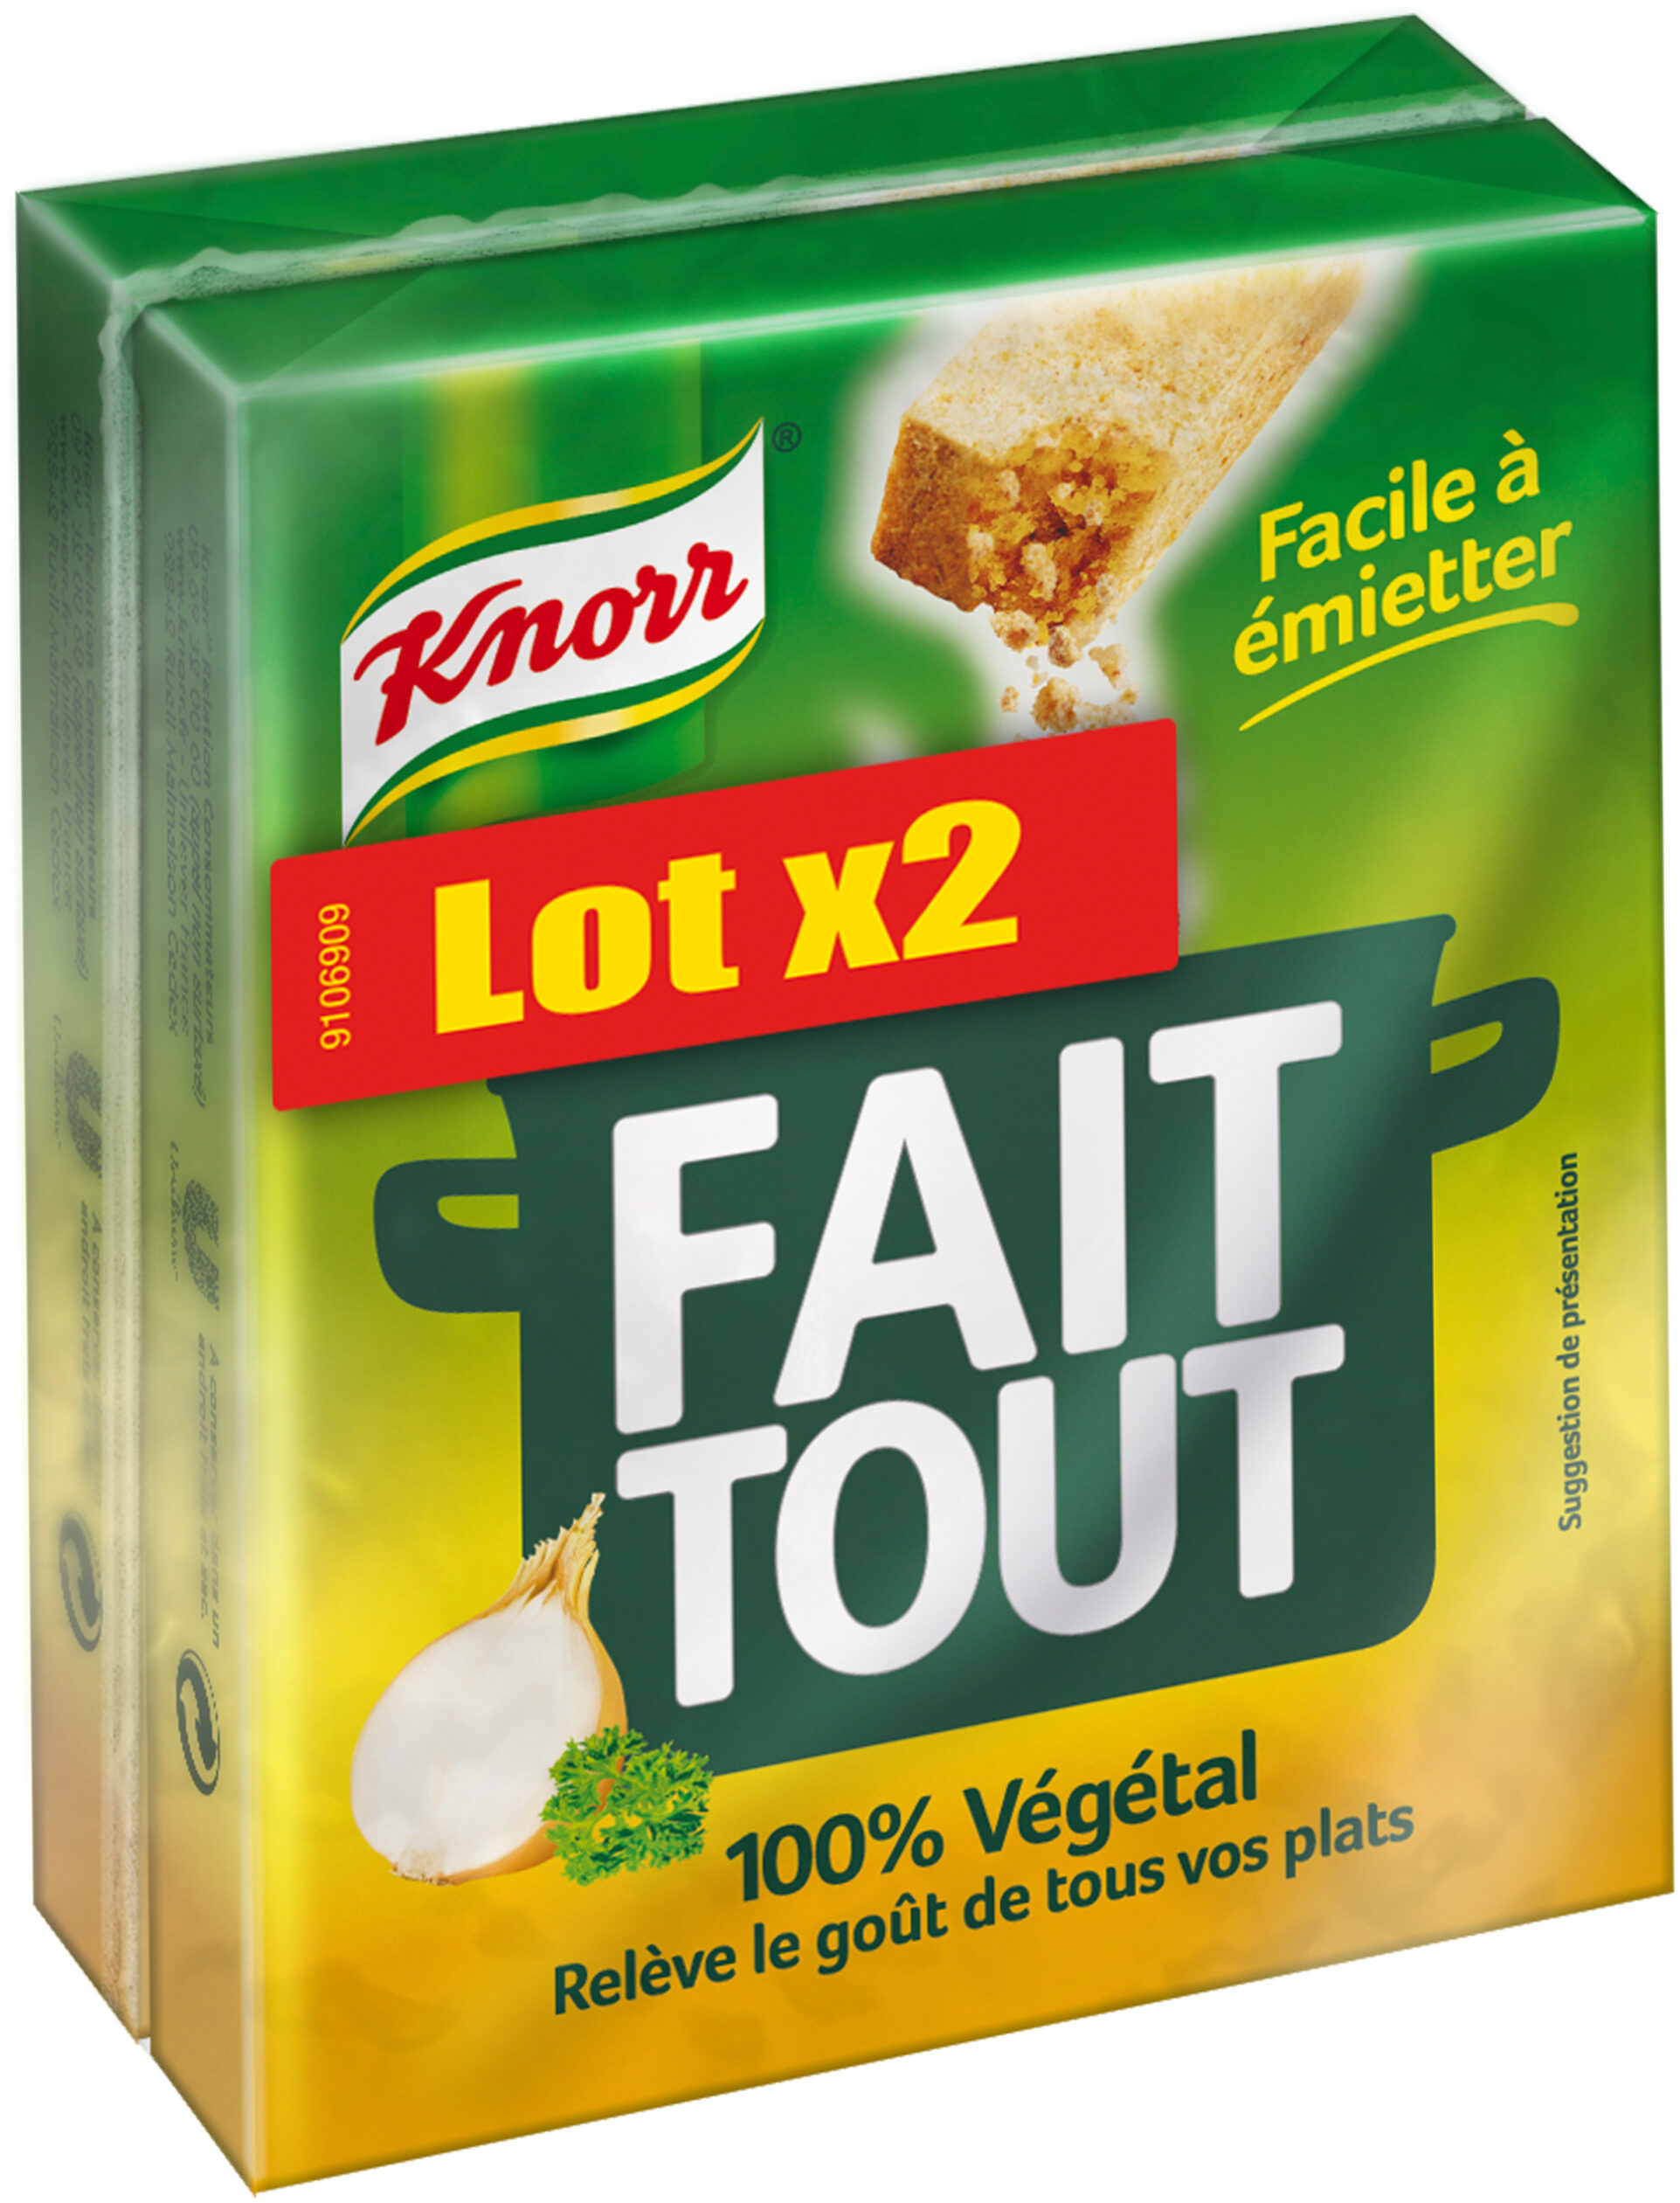 Knorr Bouillon Cube Fait Tout 100% Végétal Lot 2x10 - 200g - Produit